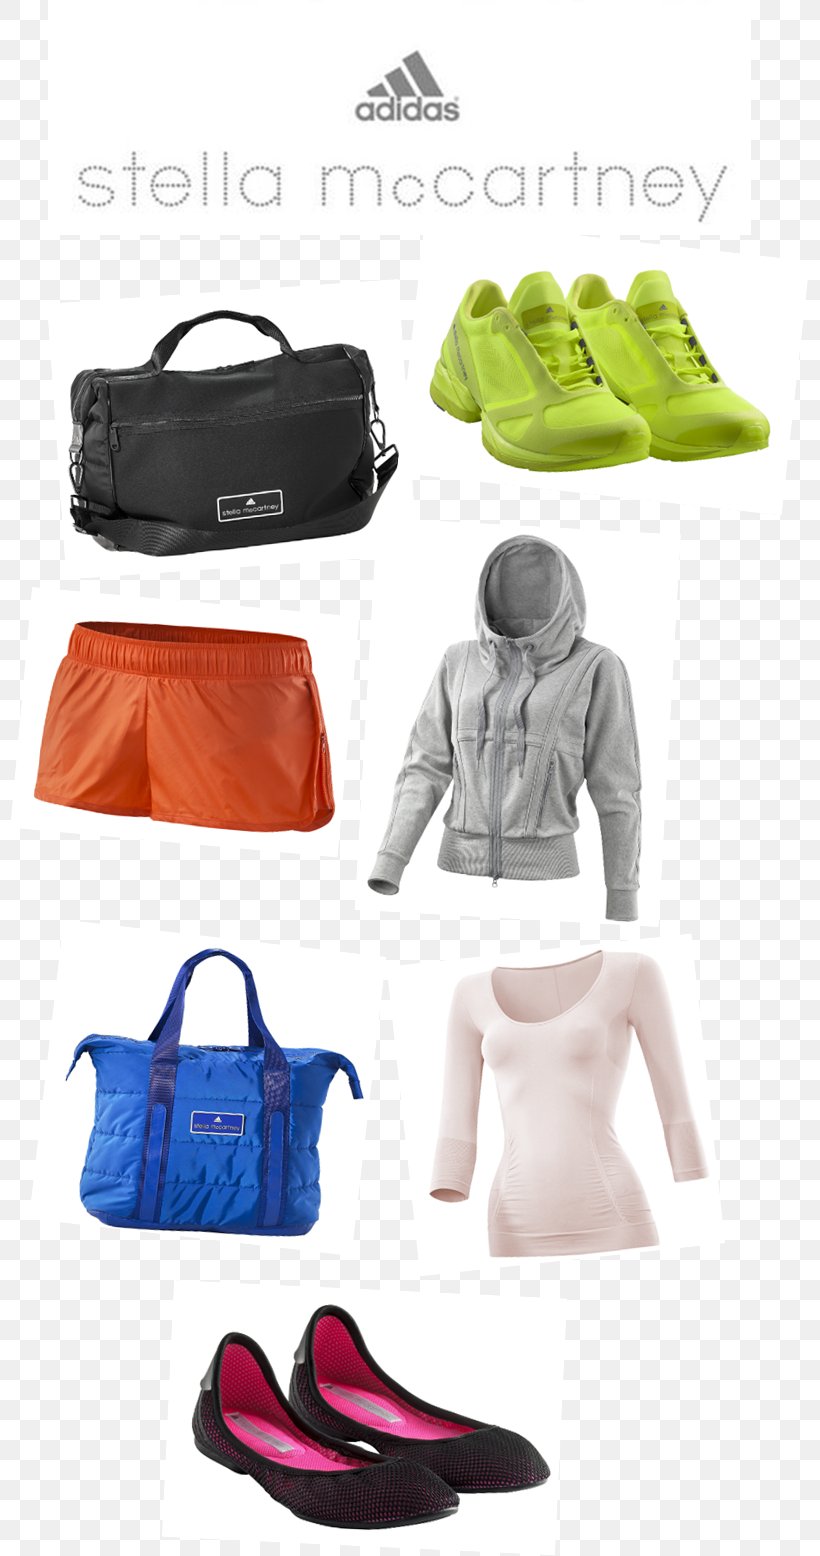 Handbag Adidas Plastic, PNG, 802x1556px, Handbag, Adidas, Bag, Fashion Accessory, Plastic Download Free